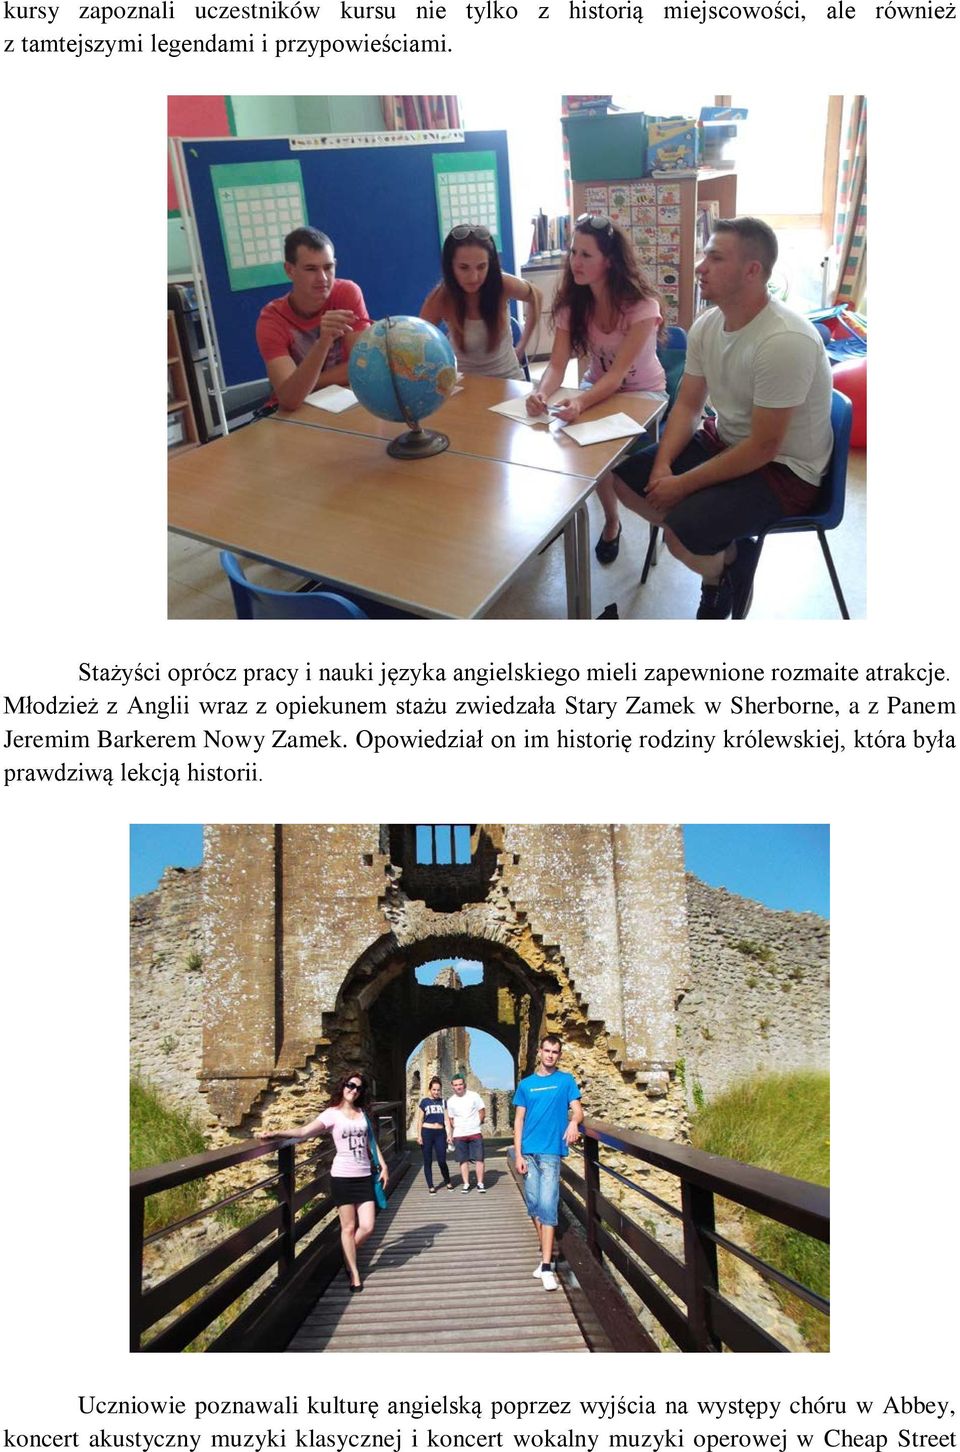 Młodzież z Anglii wraz z opiekunem stażu zwiedzała Stary Zamek w Sherborne, a z Panem Jeremim Barkerem Nowy Zamek.